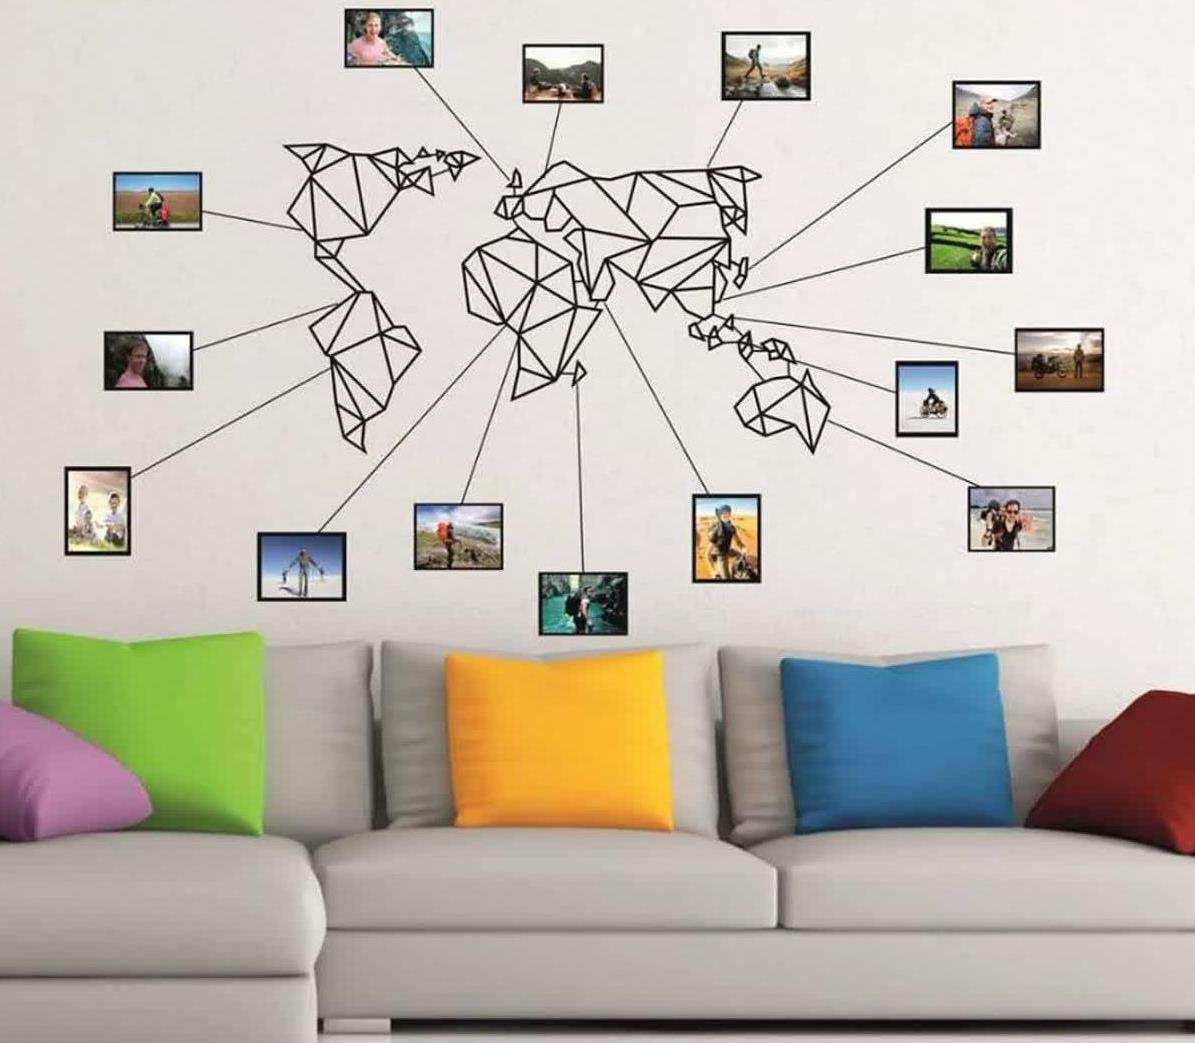 تابلو دکوری شیک نقشه جهان برای دیزاین شرکت گردشگری ، برچسب دیواری گردشگری